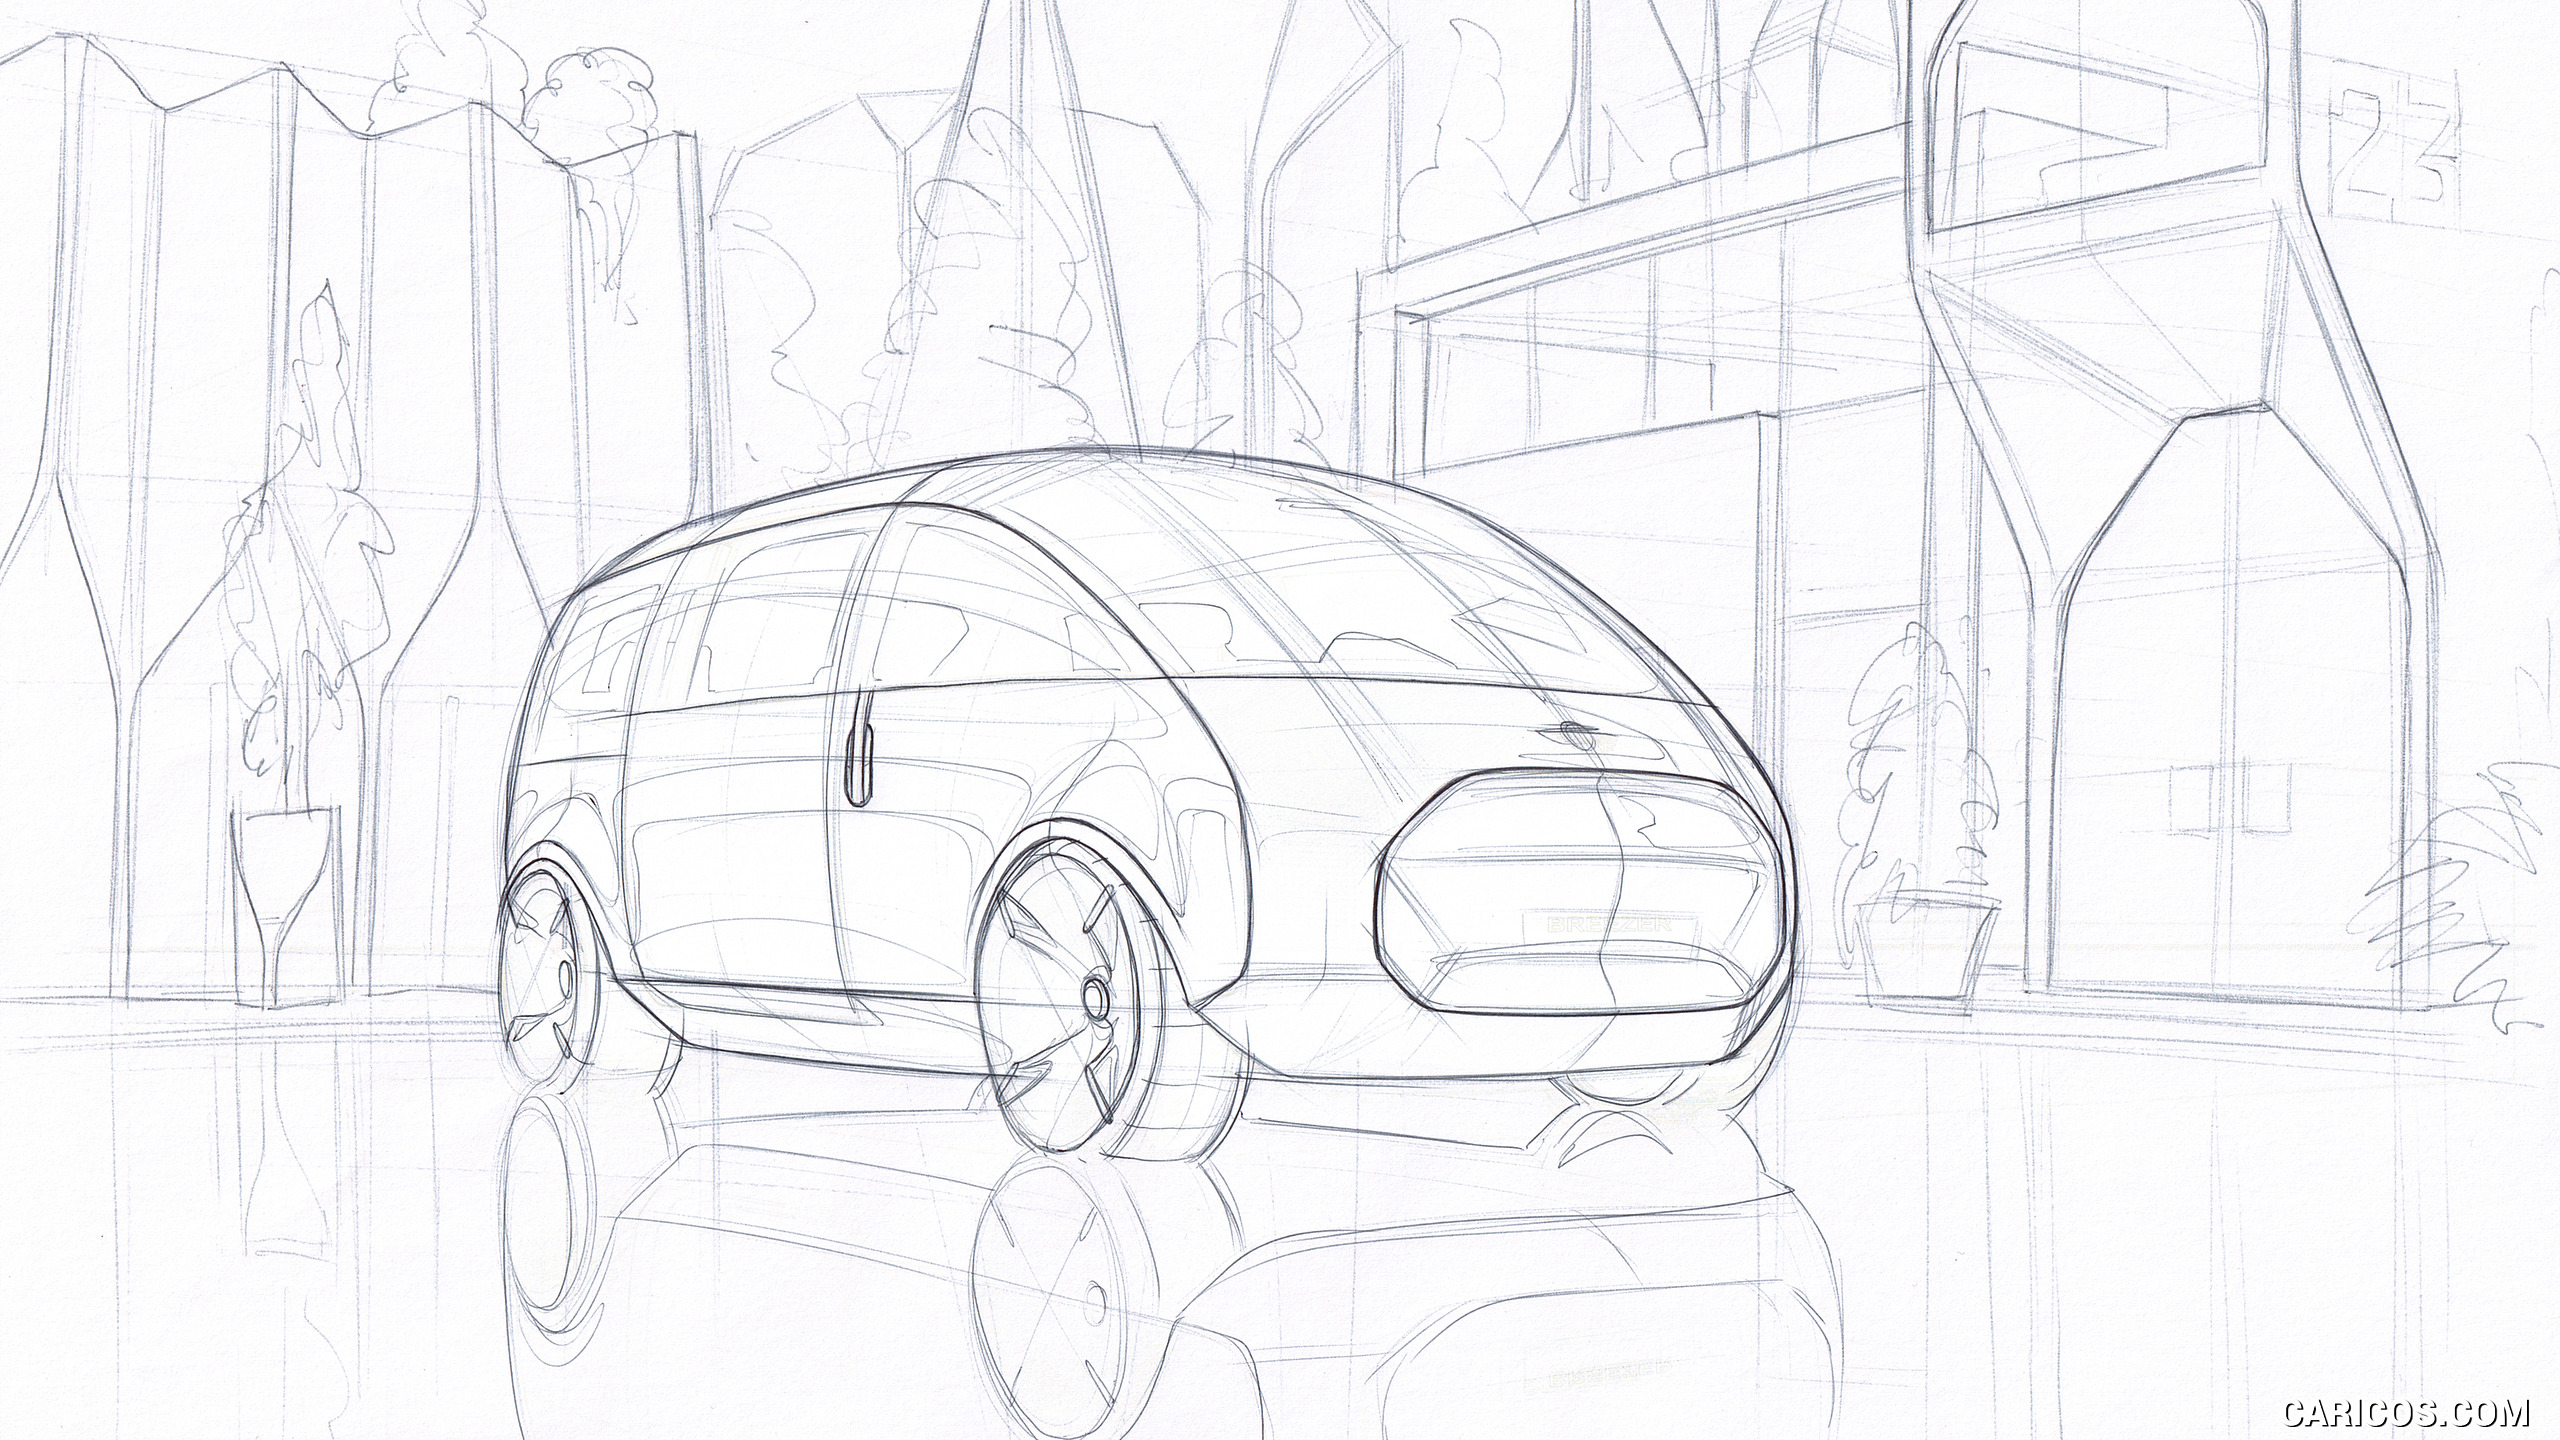 2020 MINI Urbanaut Concept - Design Sketch, #21 of 21